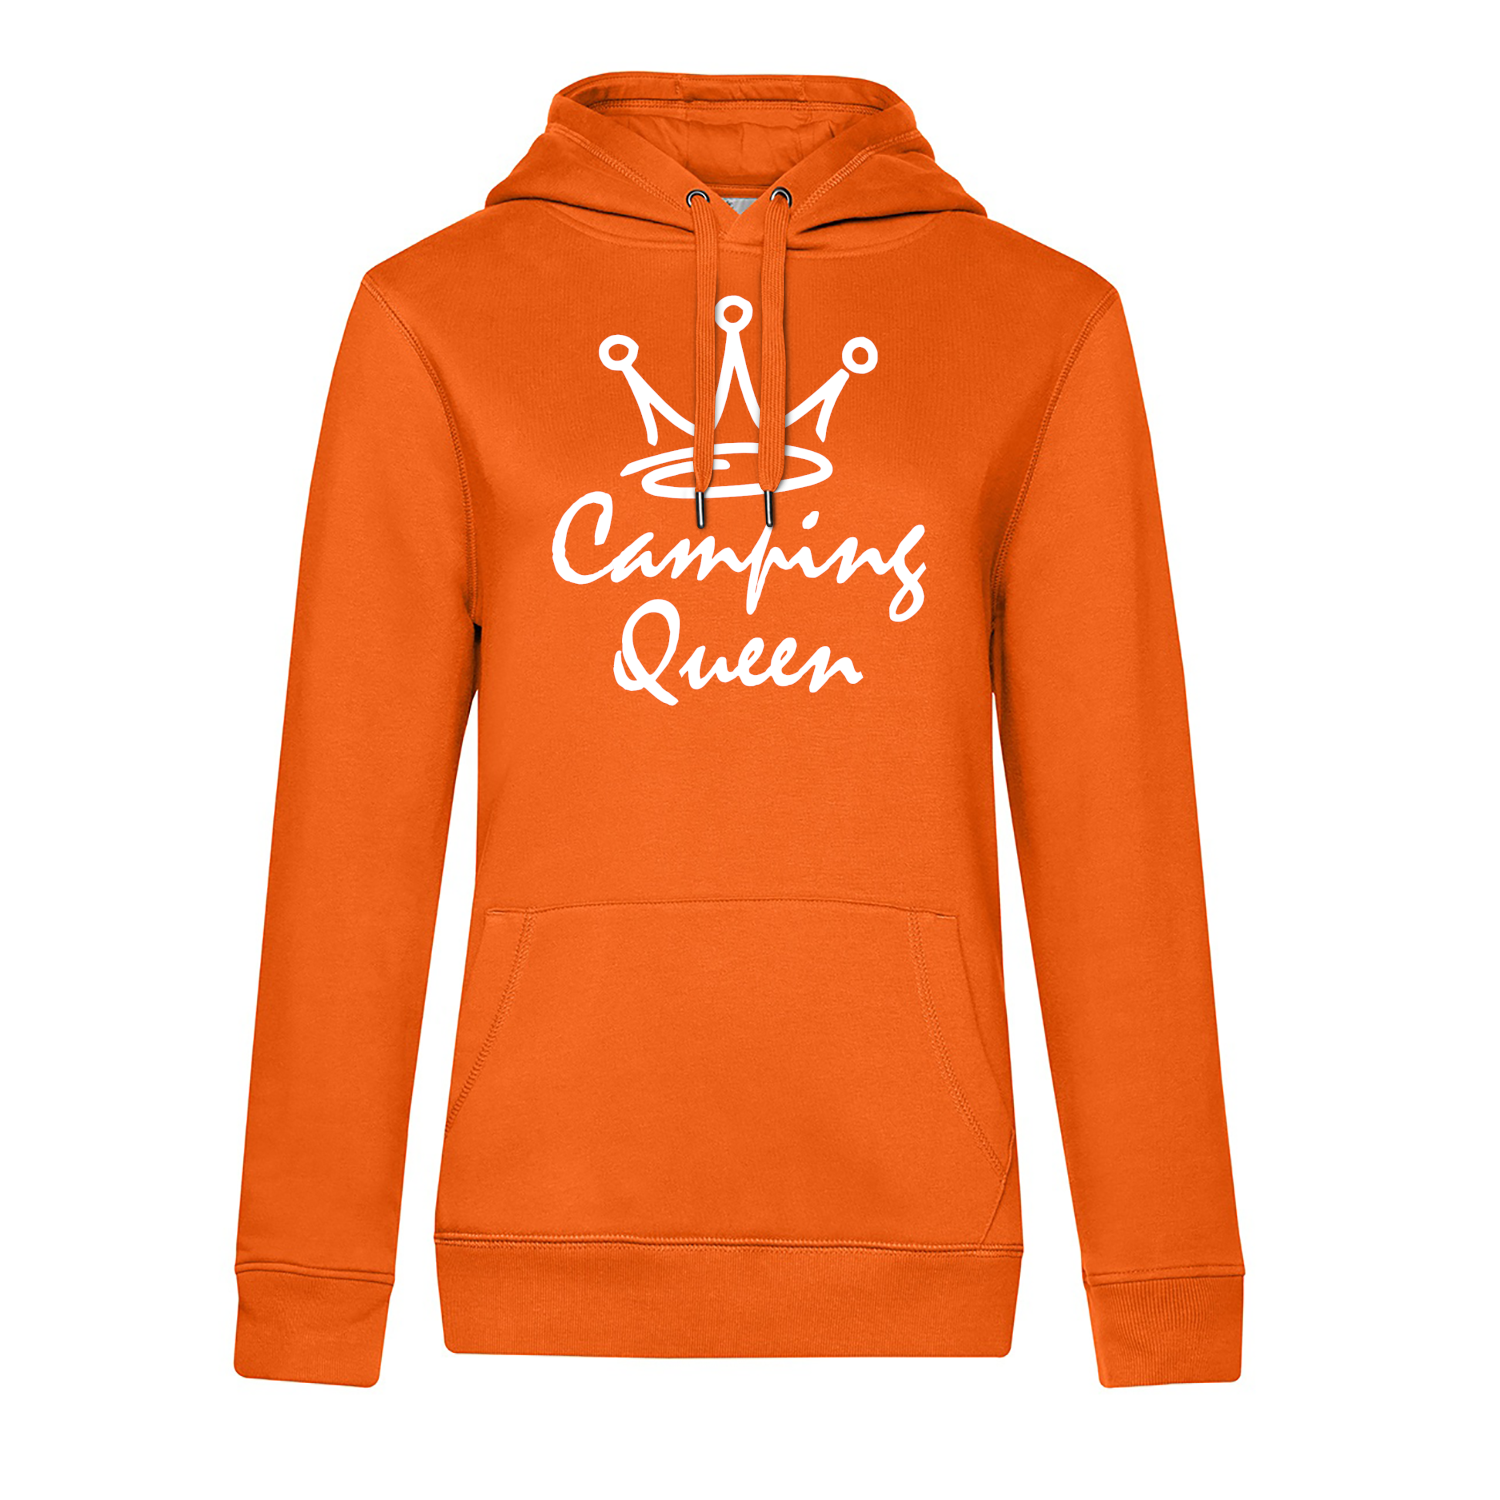 Camping Queen - Camping Hoodie für Frauen - Unser Hoodie für Camper ist die ideale Camping Kleidung. Unsere Hoodies eignen sich für Wohnmobil, Wohnwagen oder Dauercamper. Ideal auch als Geschenk für Camper.